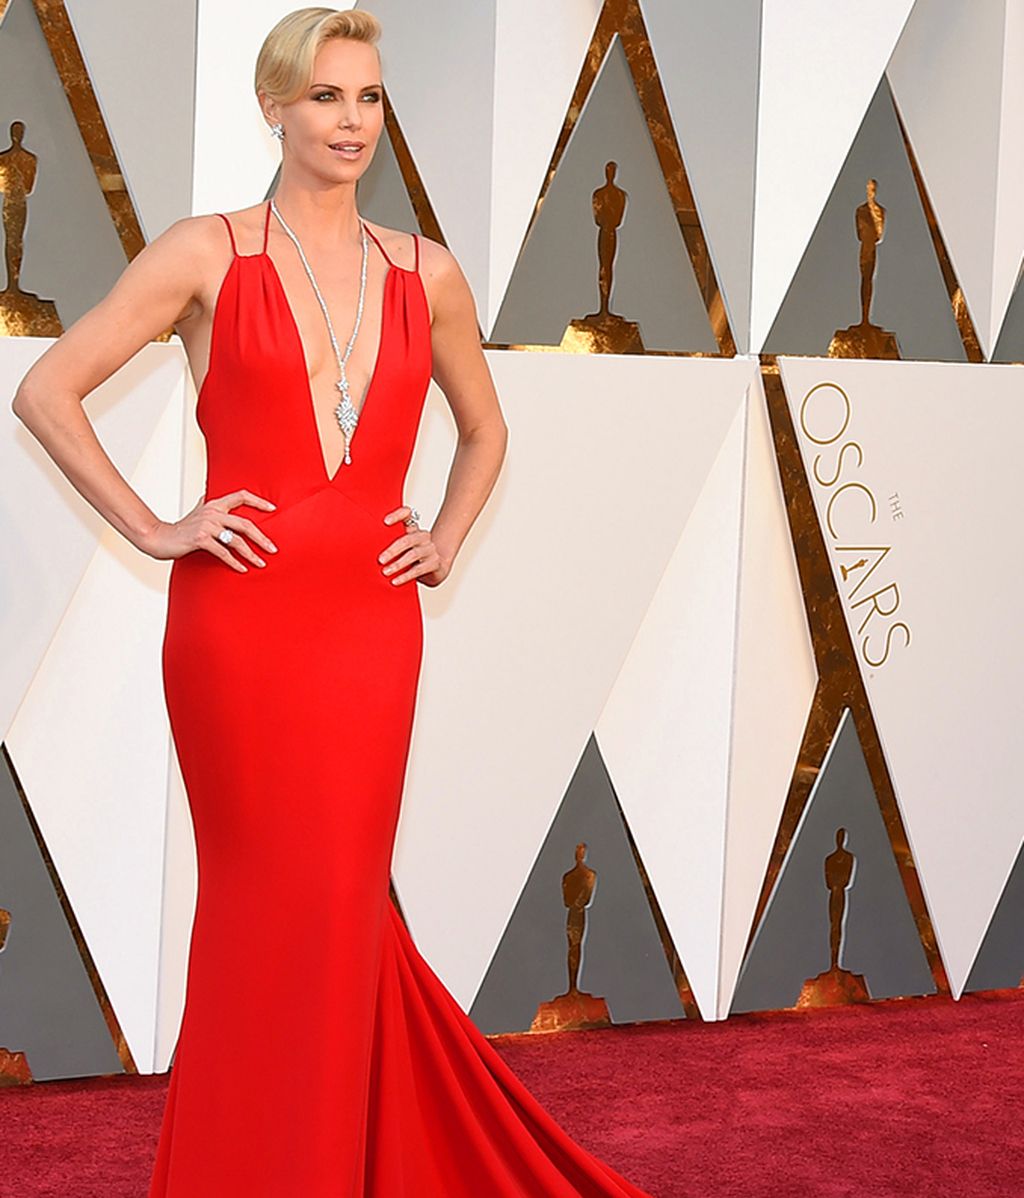 La alfombra roja de los Oscars foto a foto